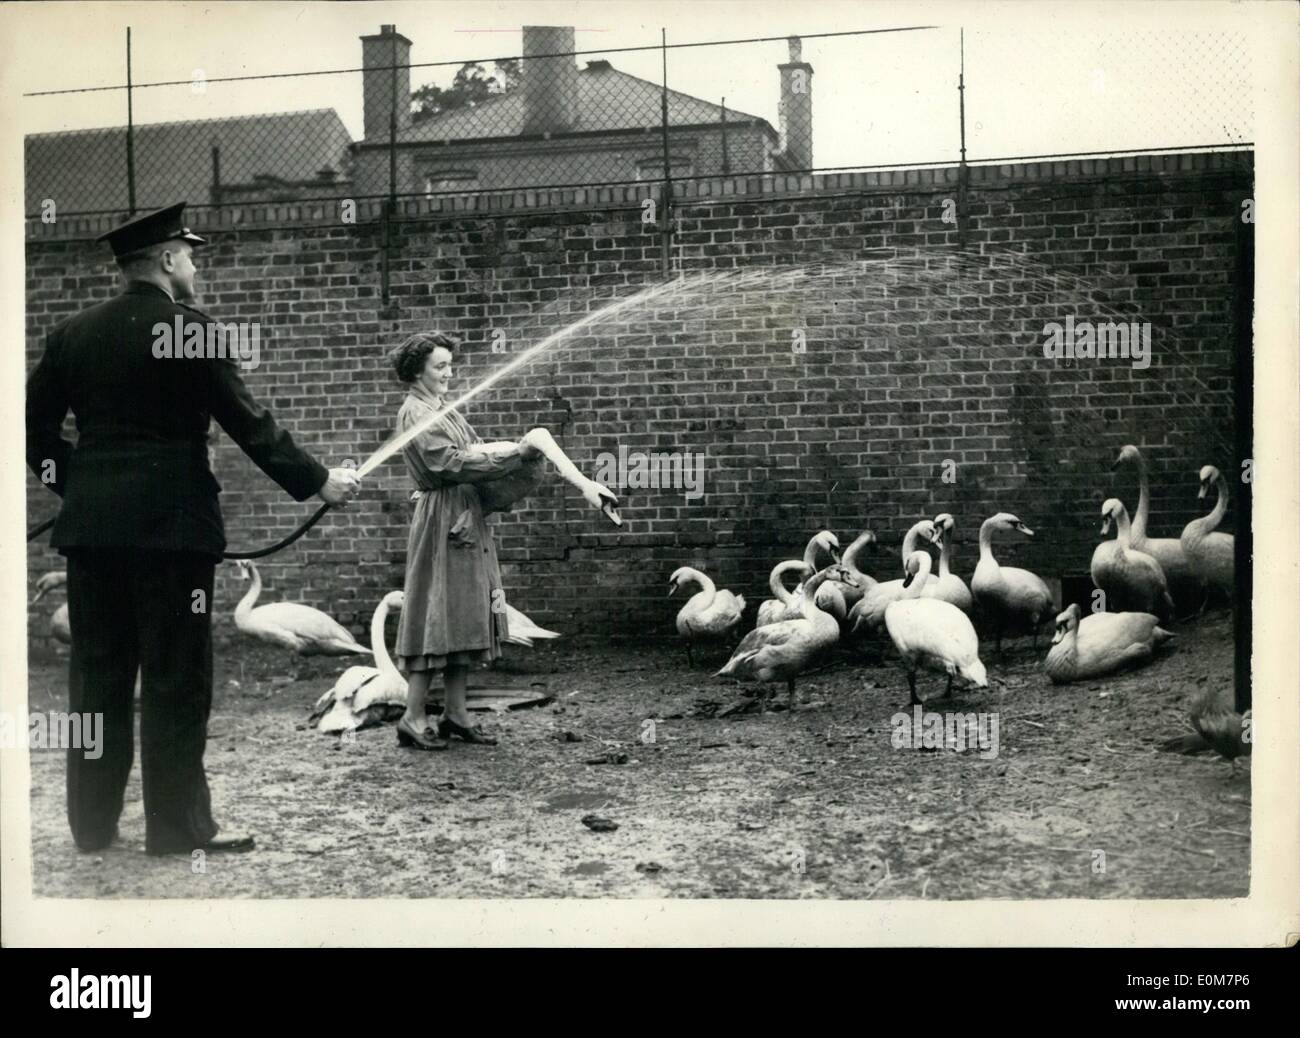 Enero 01, 1954 - Oil-Covered cisnes son redondeados Up-For Limpieza. Muchos de los Thames cubierto de aceite cisnes están siendo acorralados por funcionarios R.S.P.C.A. para limpieza. Cinco de ellos fueron capturados en Richmond. La foto muestra una pulverización oficial R.S.P.C.A.: algunos de los cisnes cubierto de aceite capturado con una manguera para eliminar el exceso de suciedad antes de que el aceite es extraído. Este fue el escenario en el Putney Animal Clinic. Foto de stock